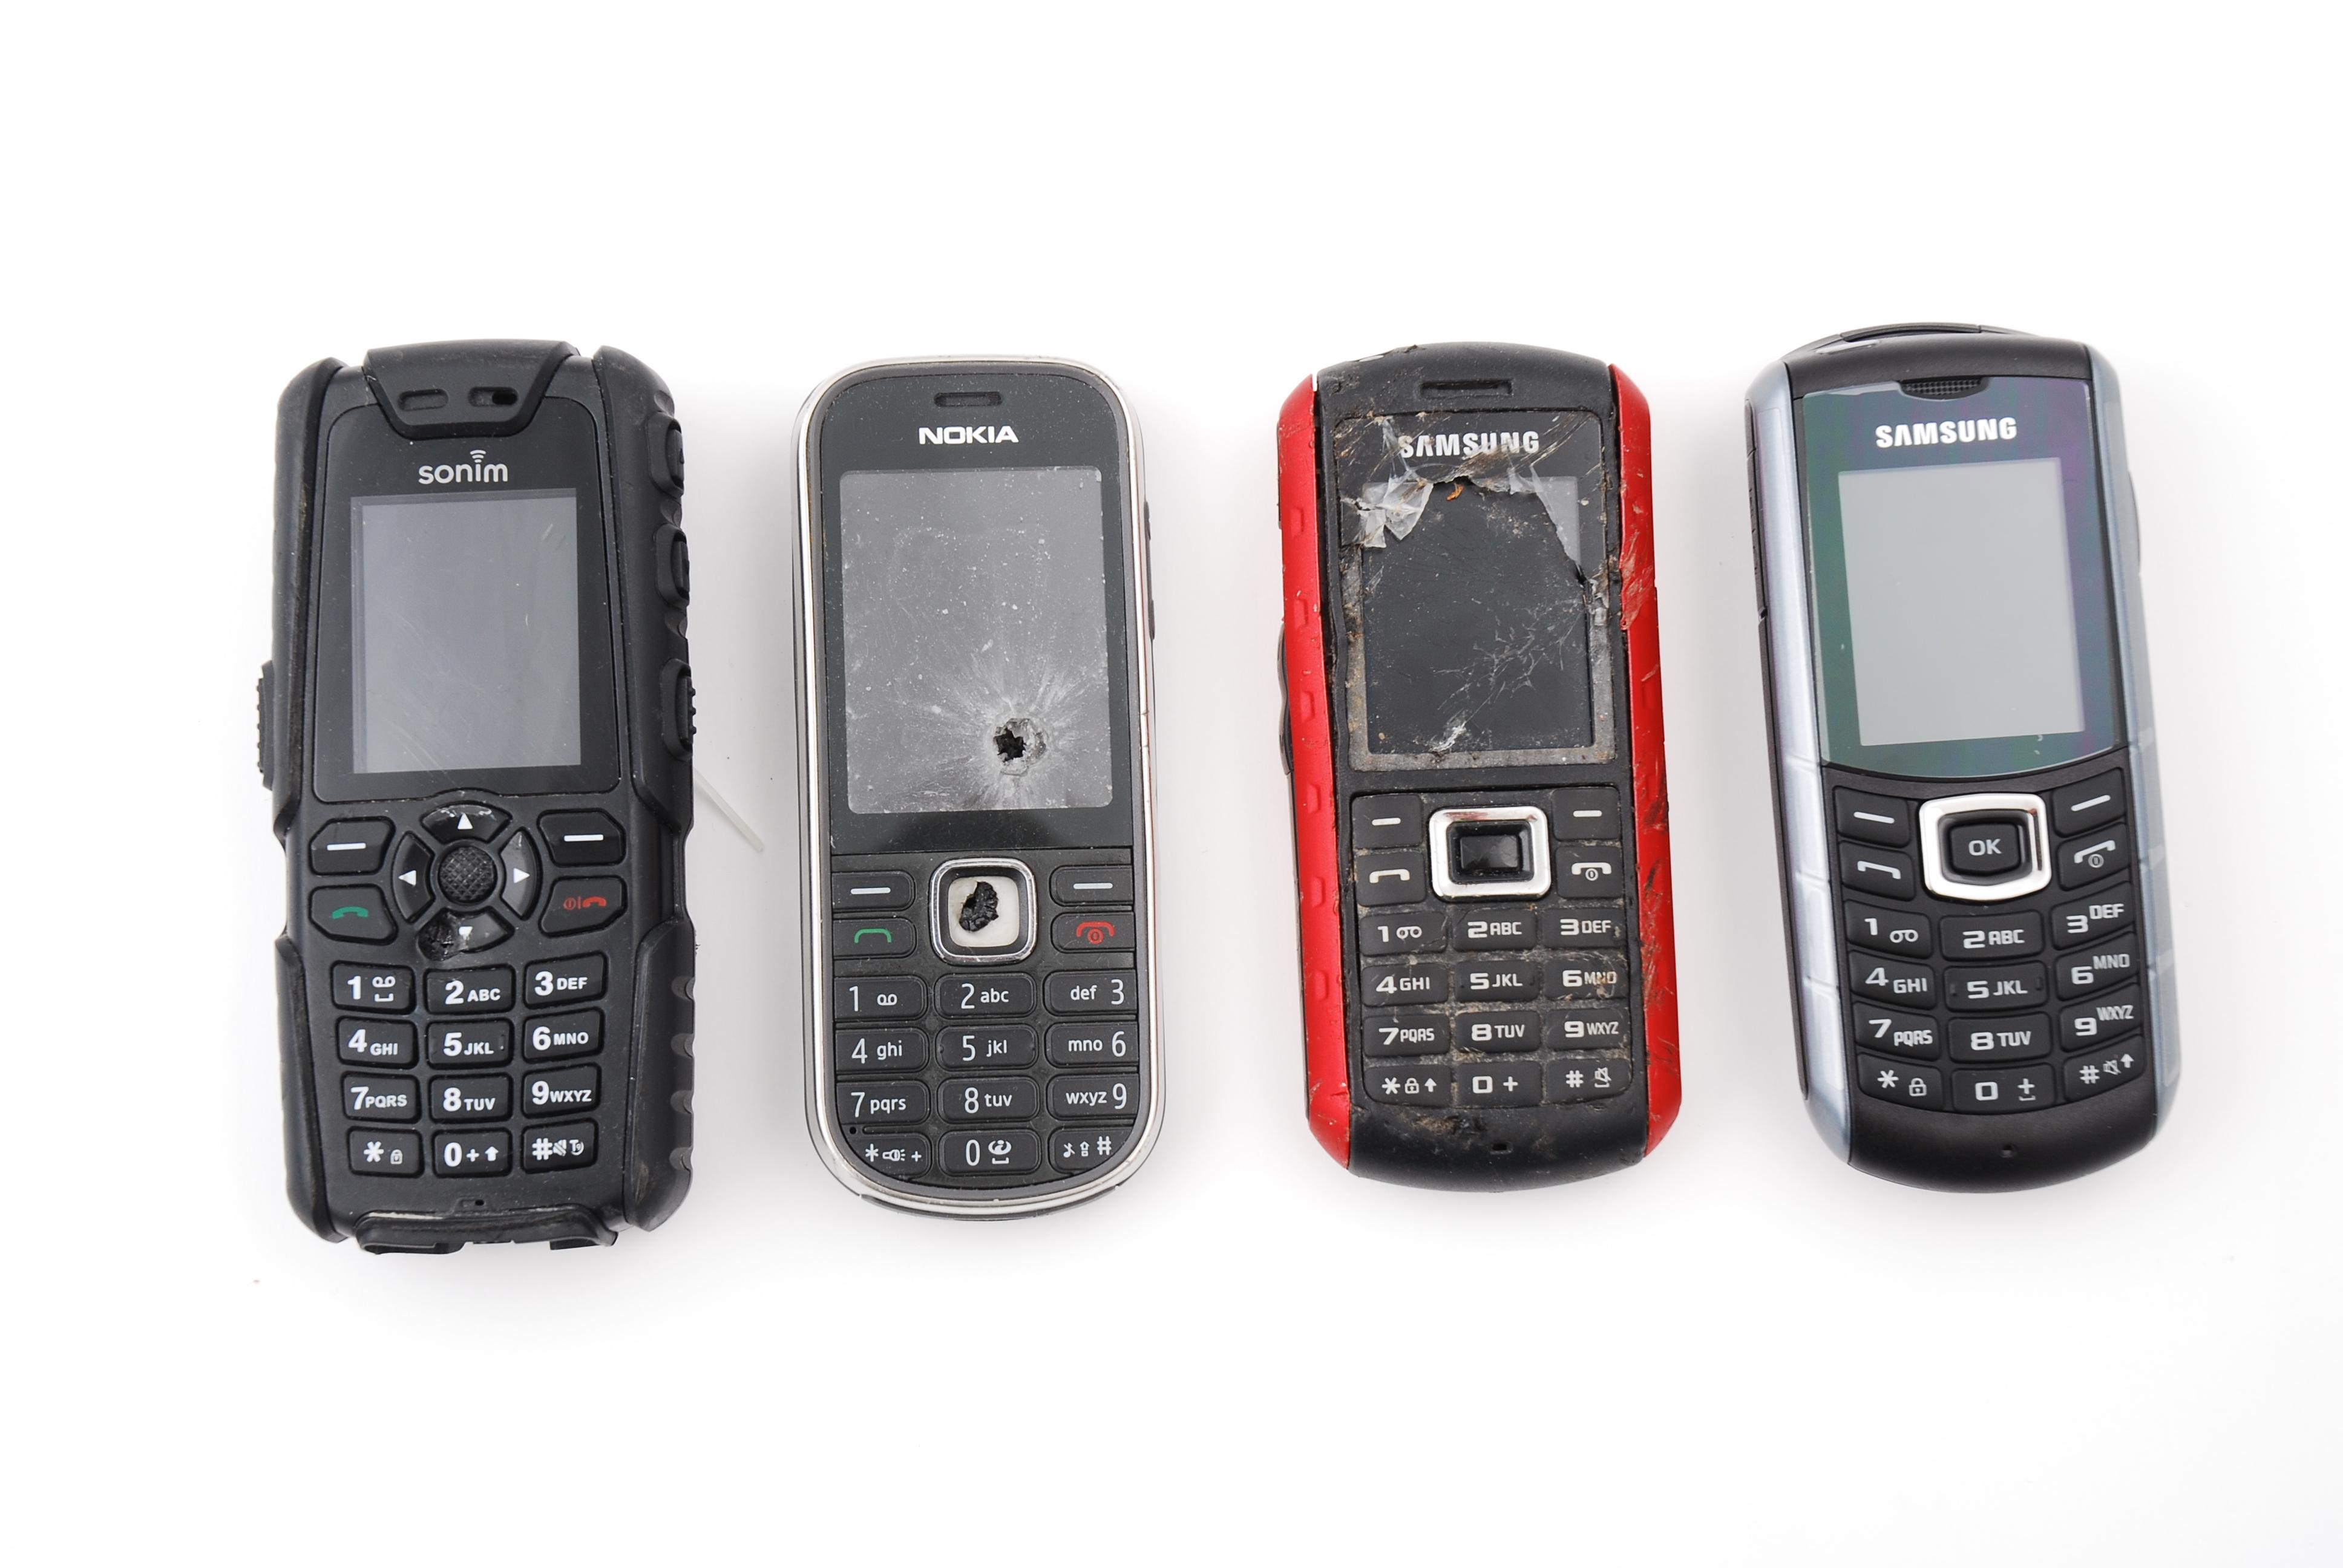 E2370 til høyre på bildet er på størrelse med andre robuste telefoner.